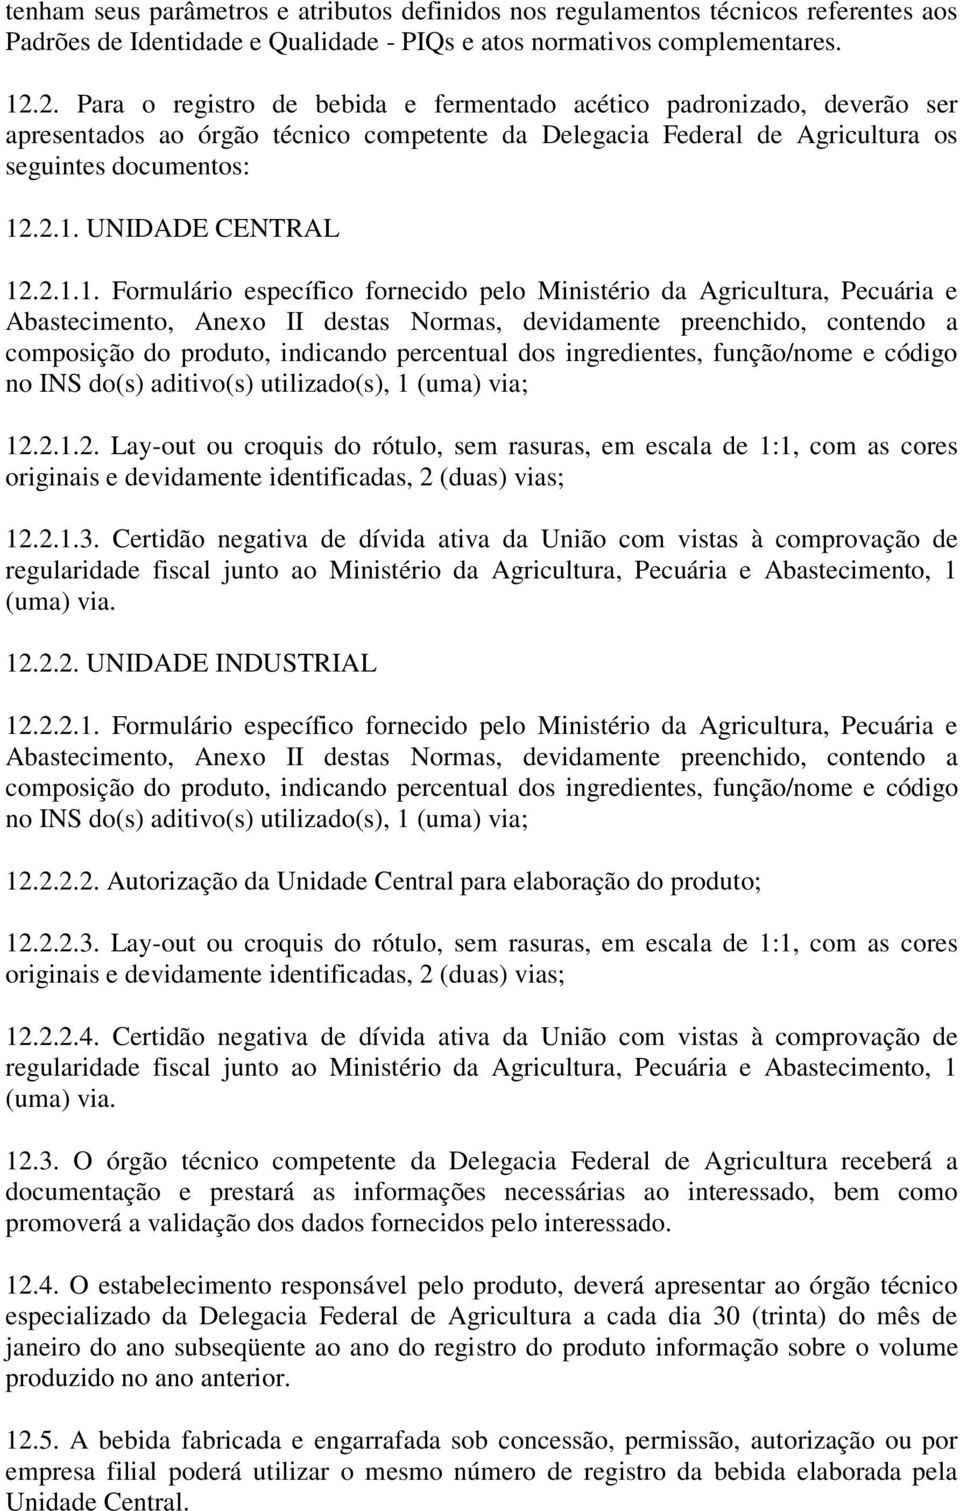 2.1.1. Formulário específico fornecido pelo Ministério da Agricultura, Pecuária e Abastecimento, Anexo II destas Normas, devidamente preenchido, contendo a composição do produto, indicando percentual